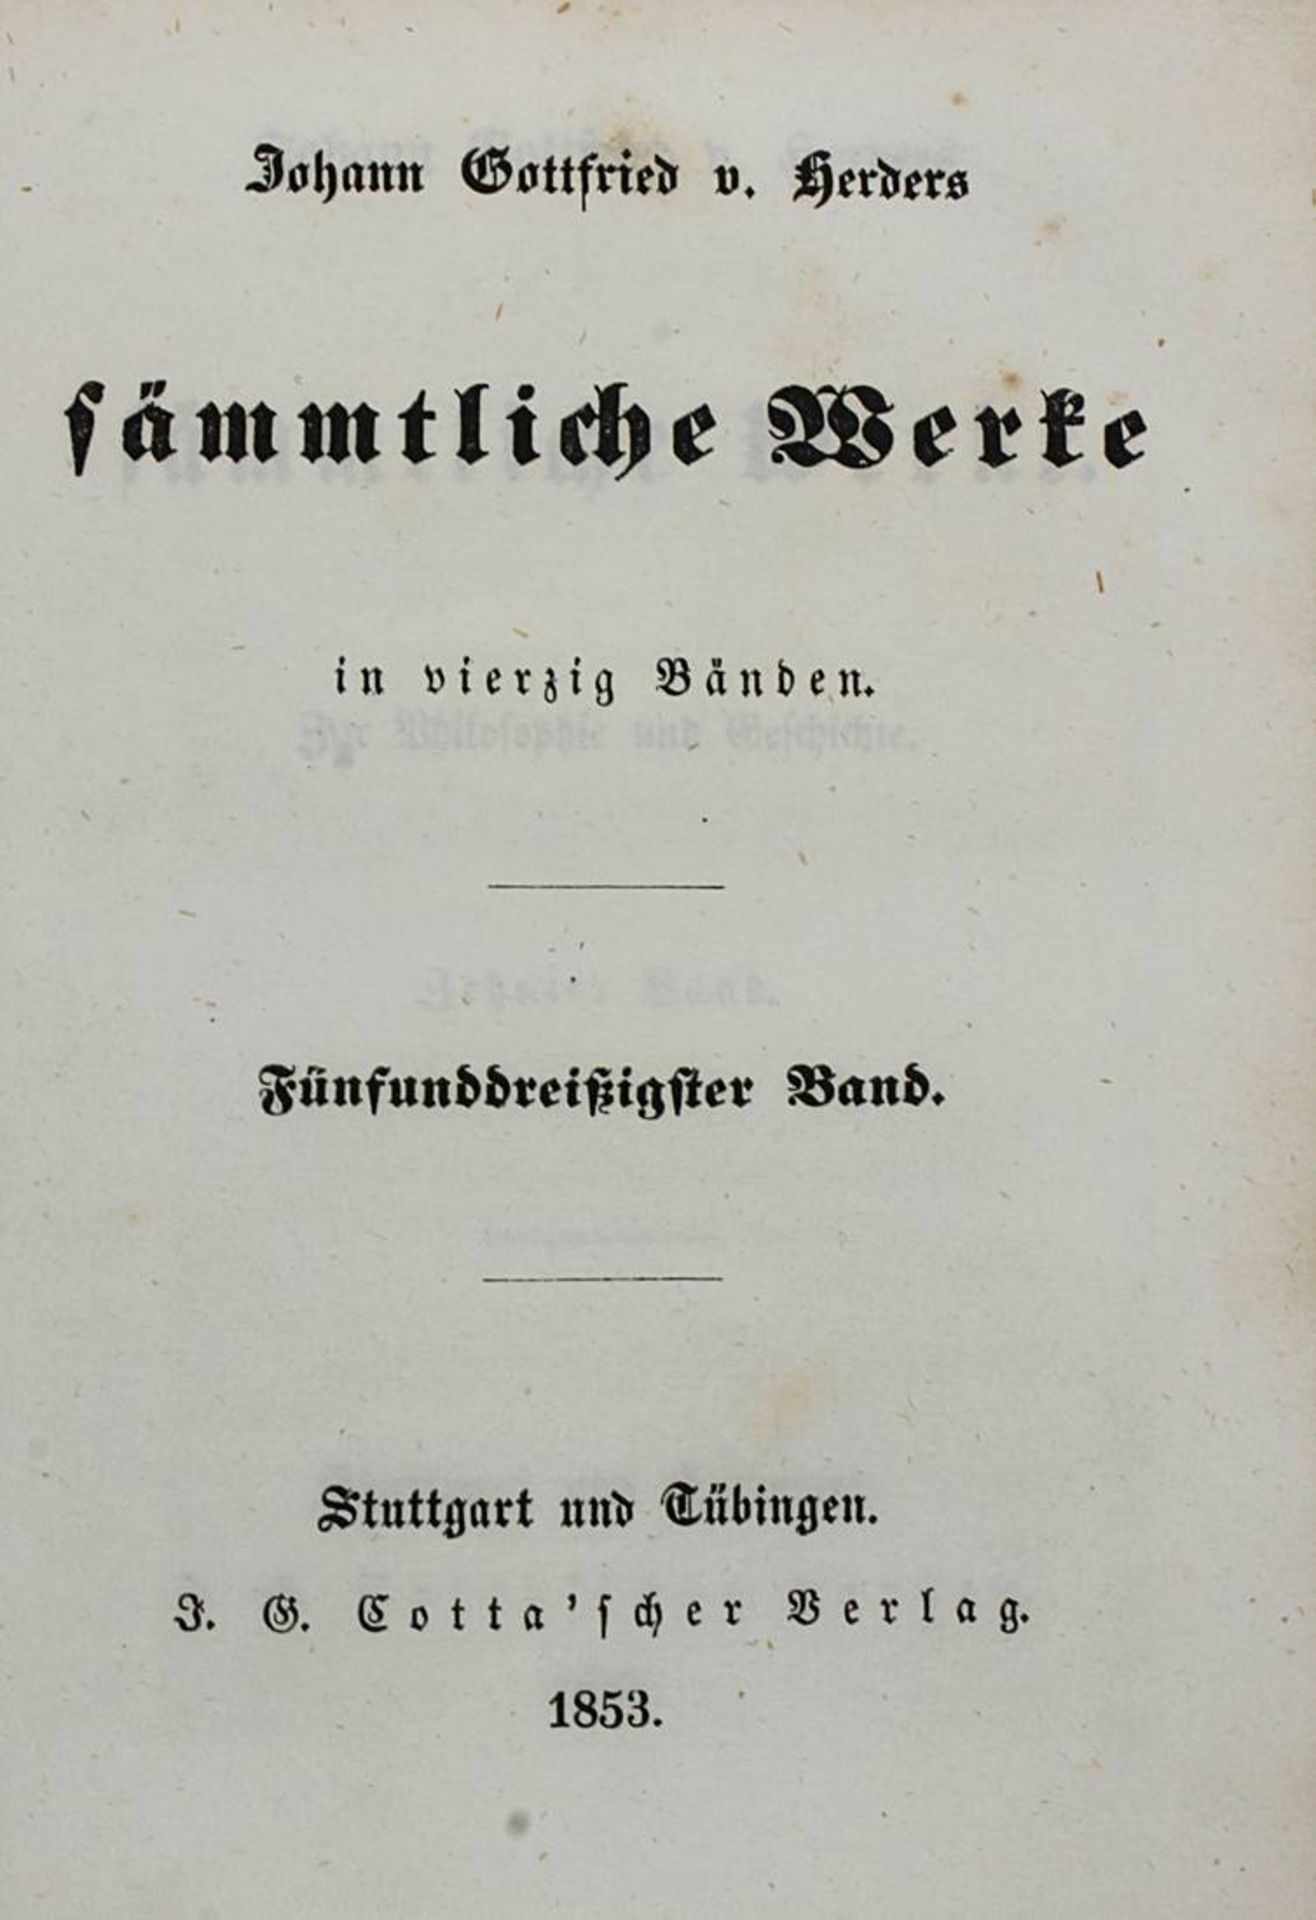 Herder, Johann Gottfried von: Sämtliche Werke, 39 von 40 Bden, Band 1 fehlt, Stuttgart u. Tübingen,